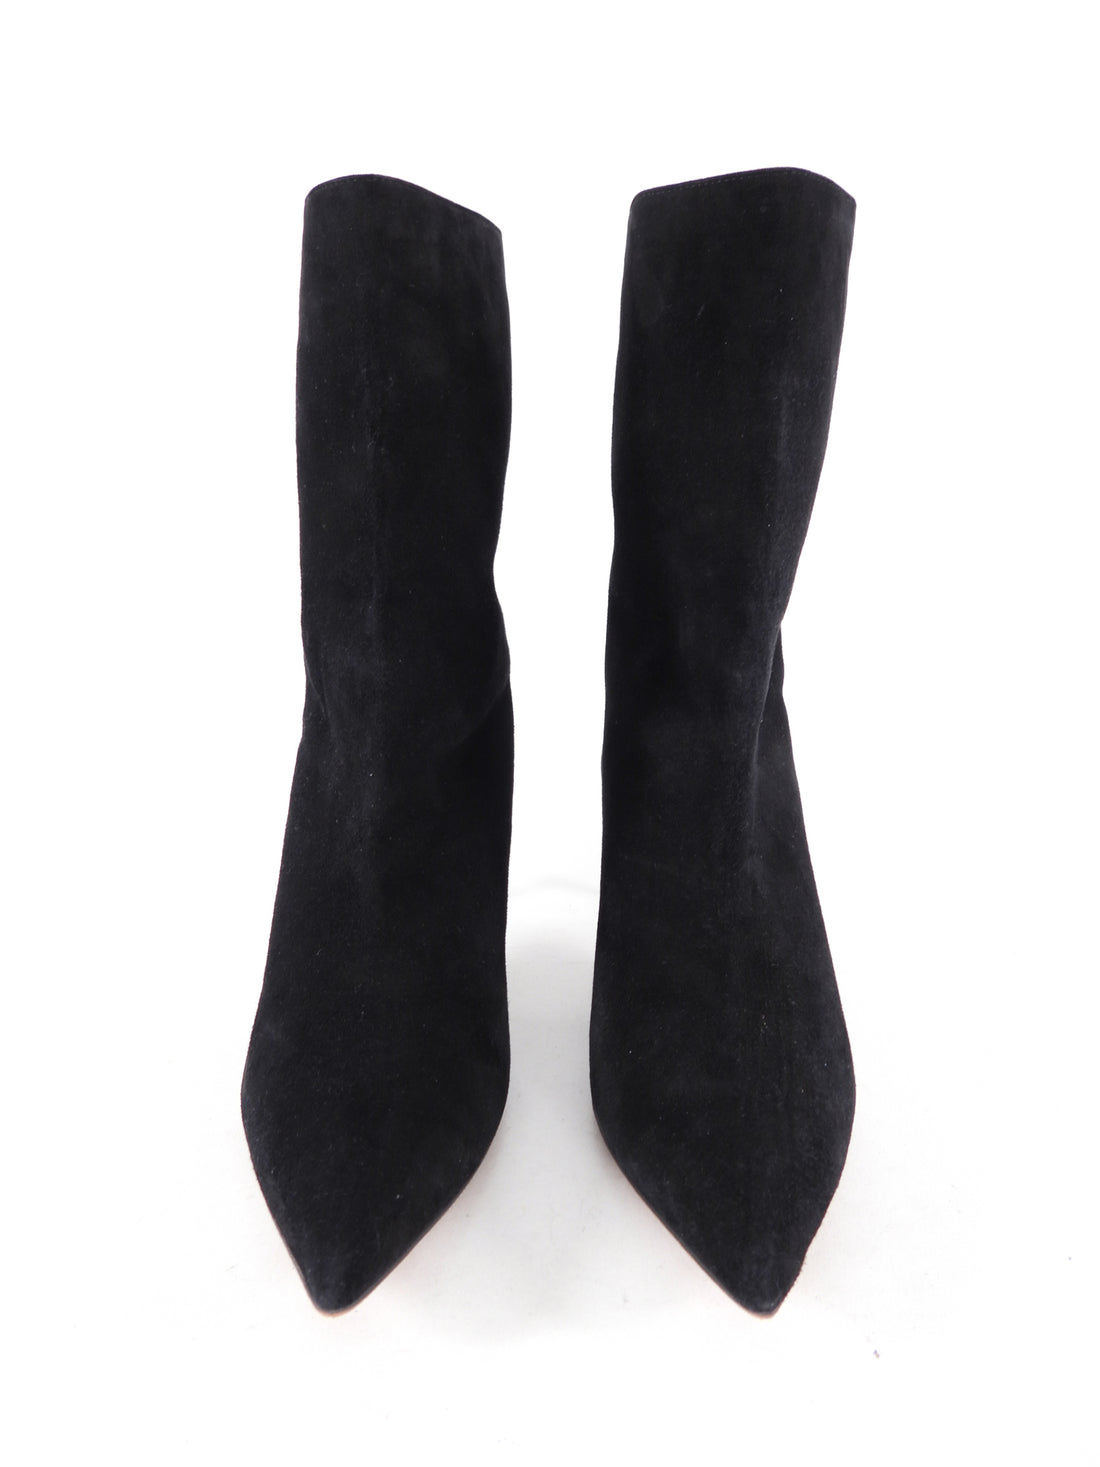 Aquazurra Black Suede Kitten Heel Ankle Boots - 39 / 8.5